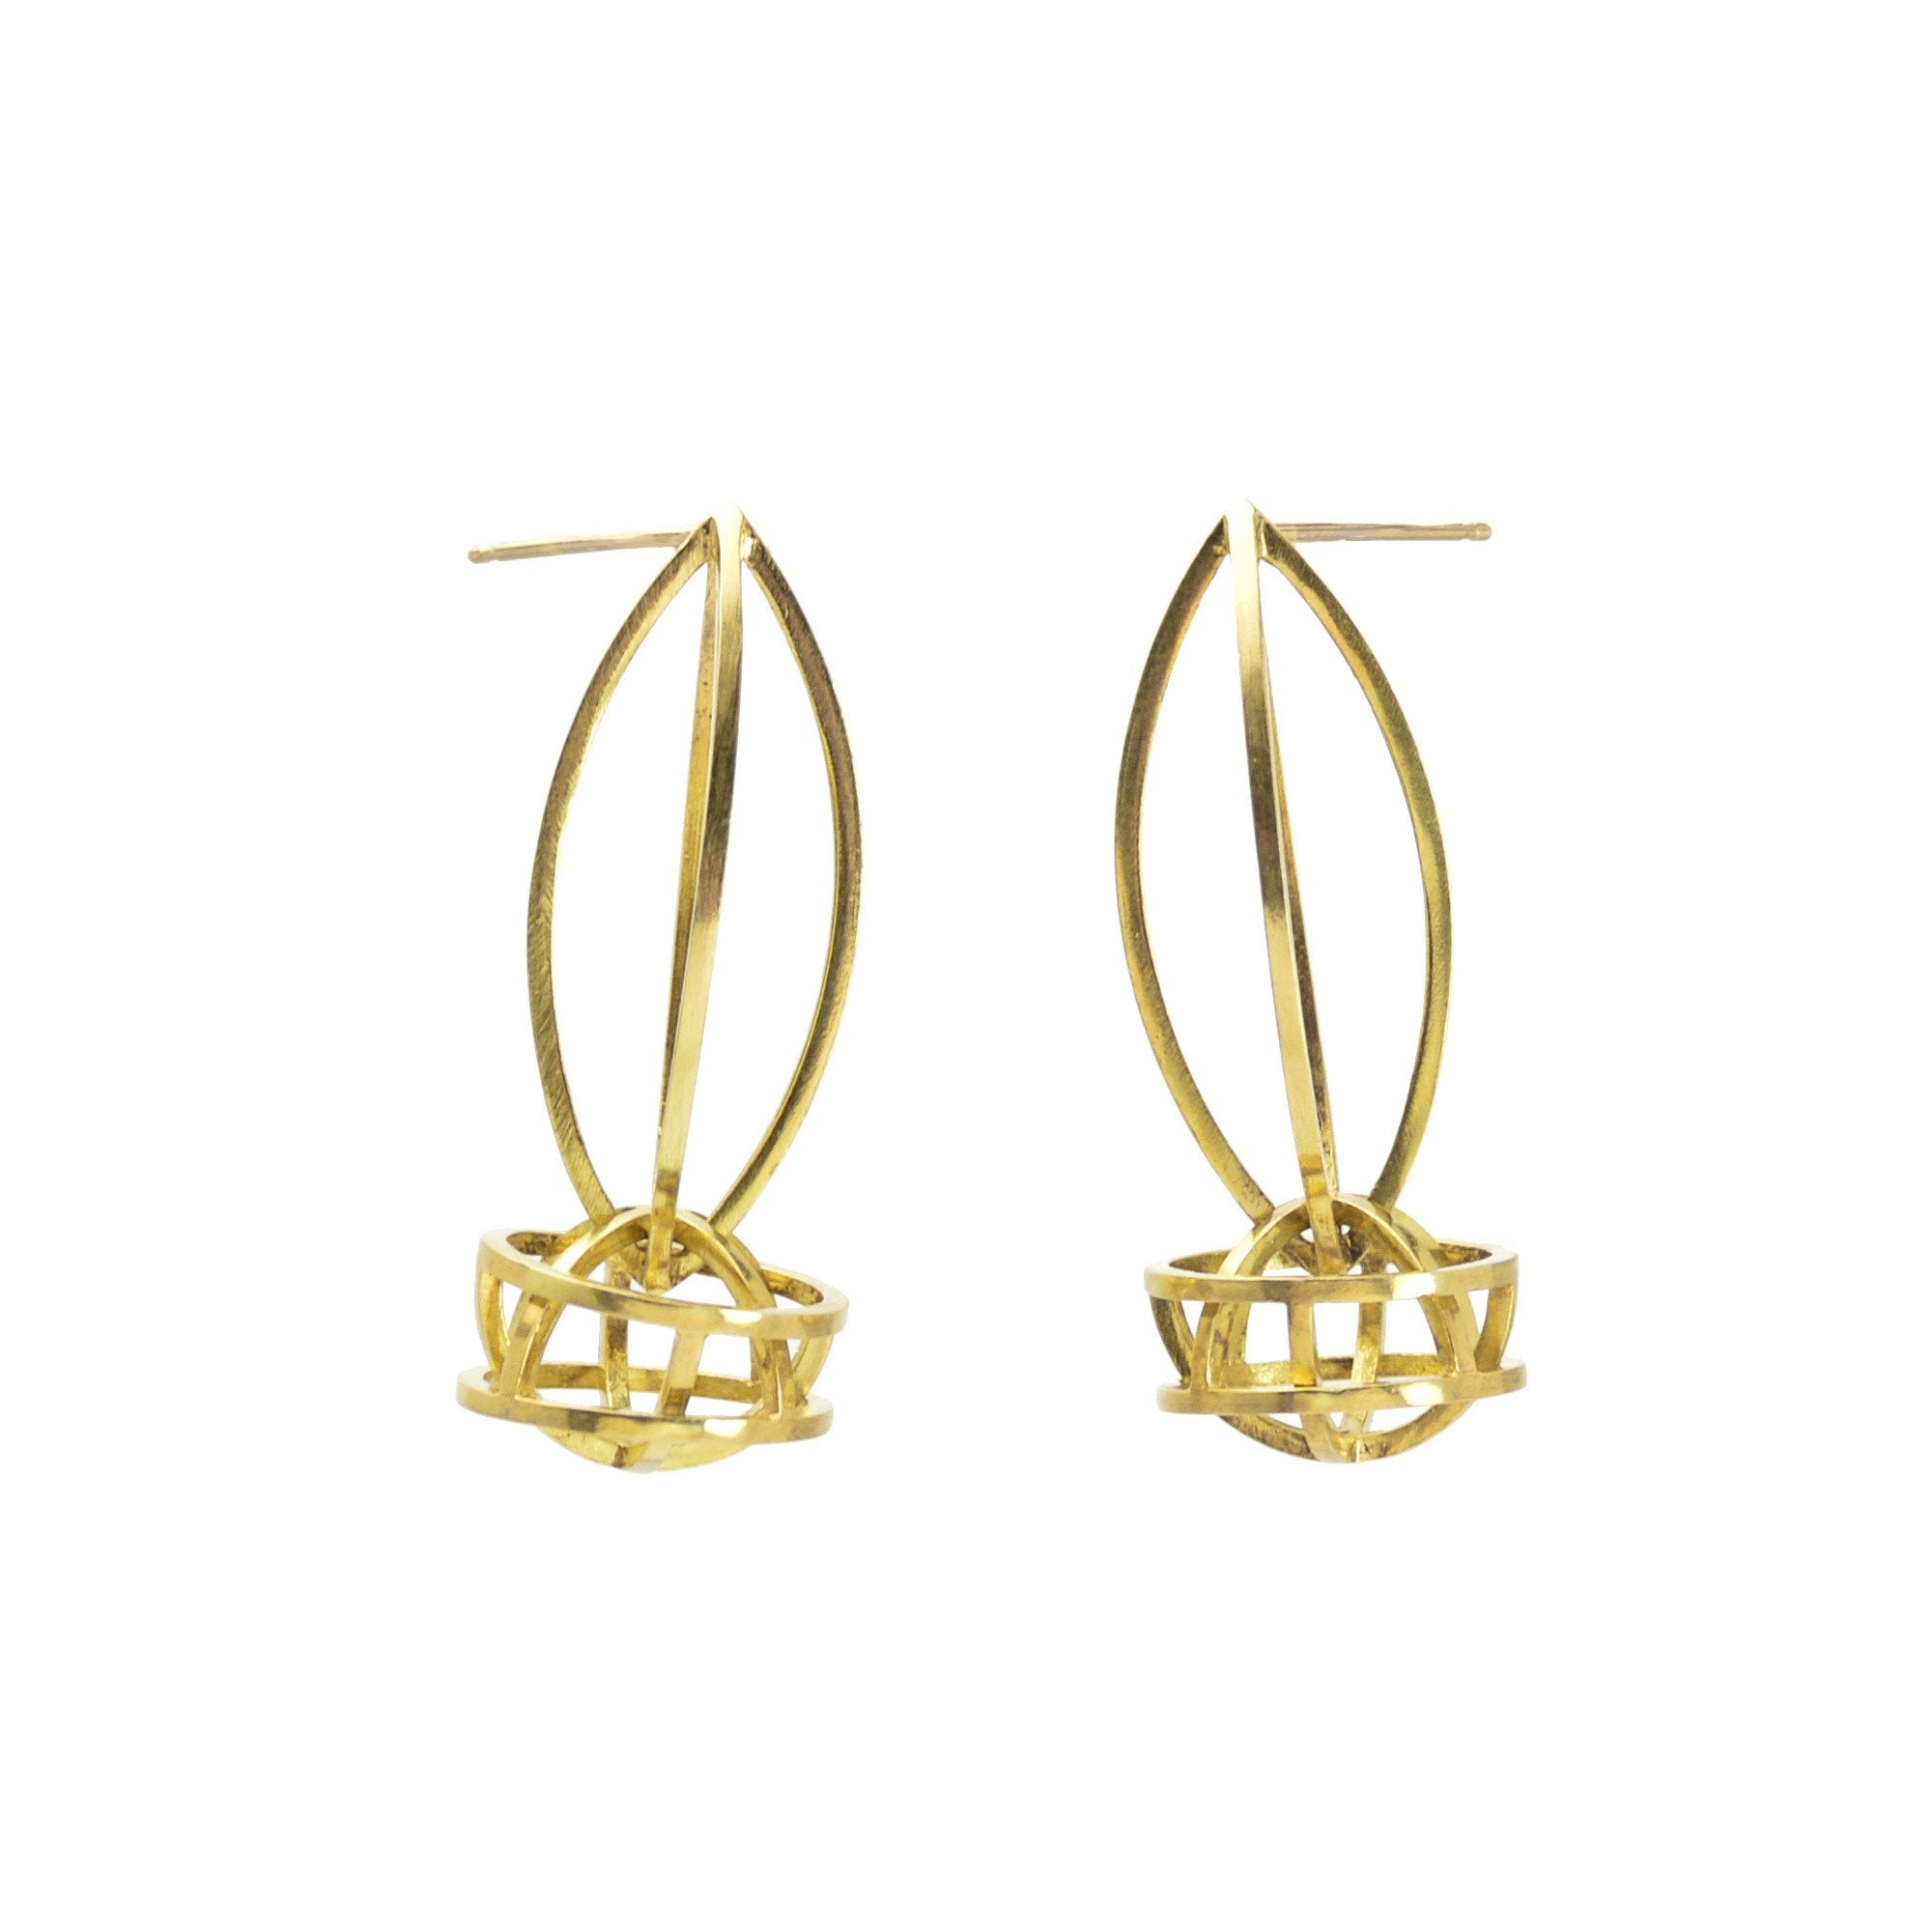 Lattis Link Earrings in 18k Royal Gold